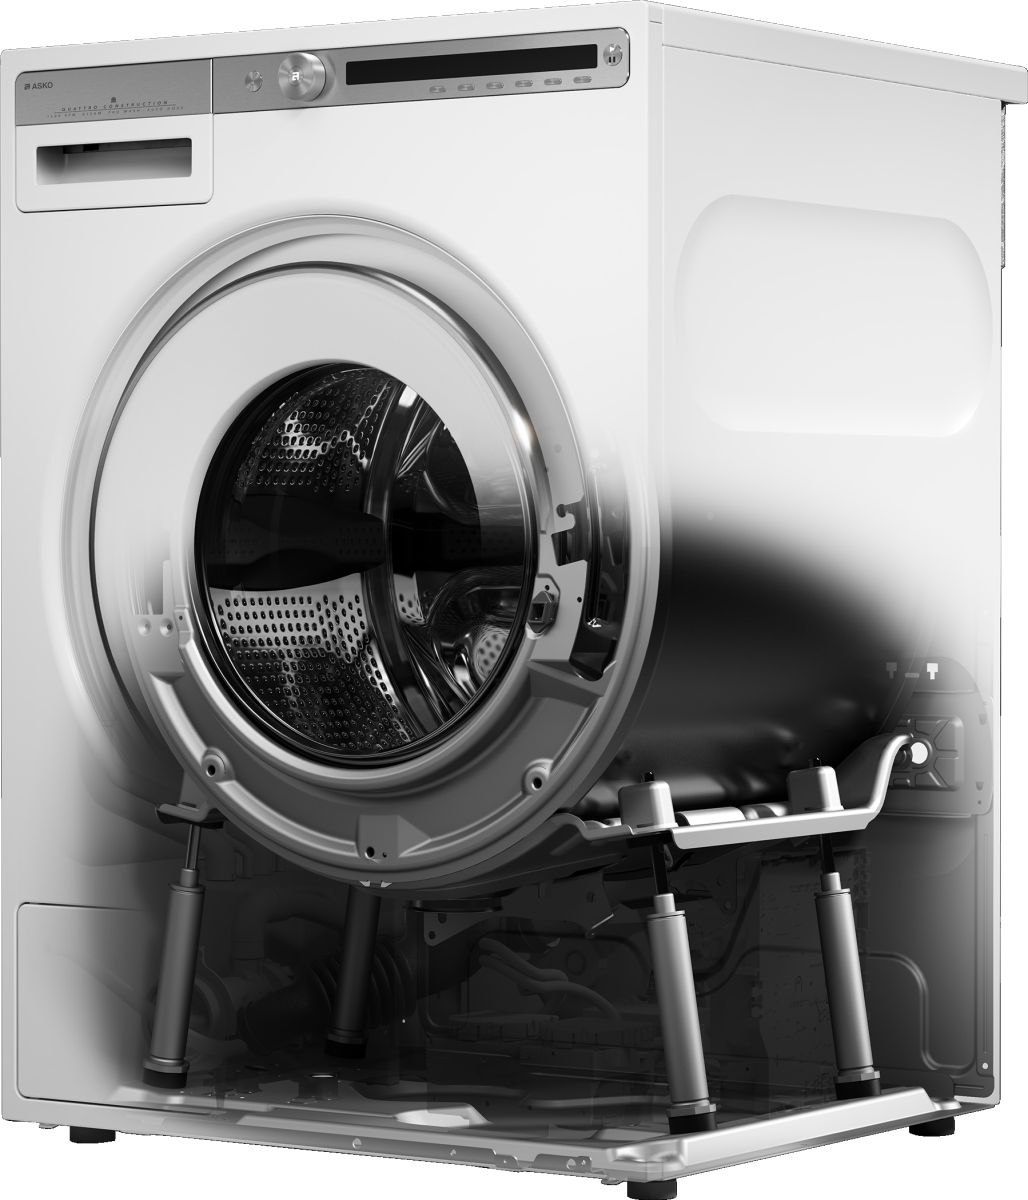 ASKO wasmachine Logic 8 A+++ - i.Lectro - Elektro service aan webshop prijzen